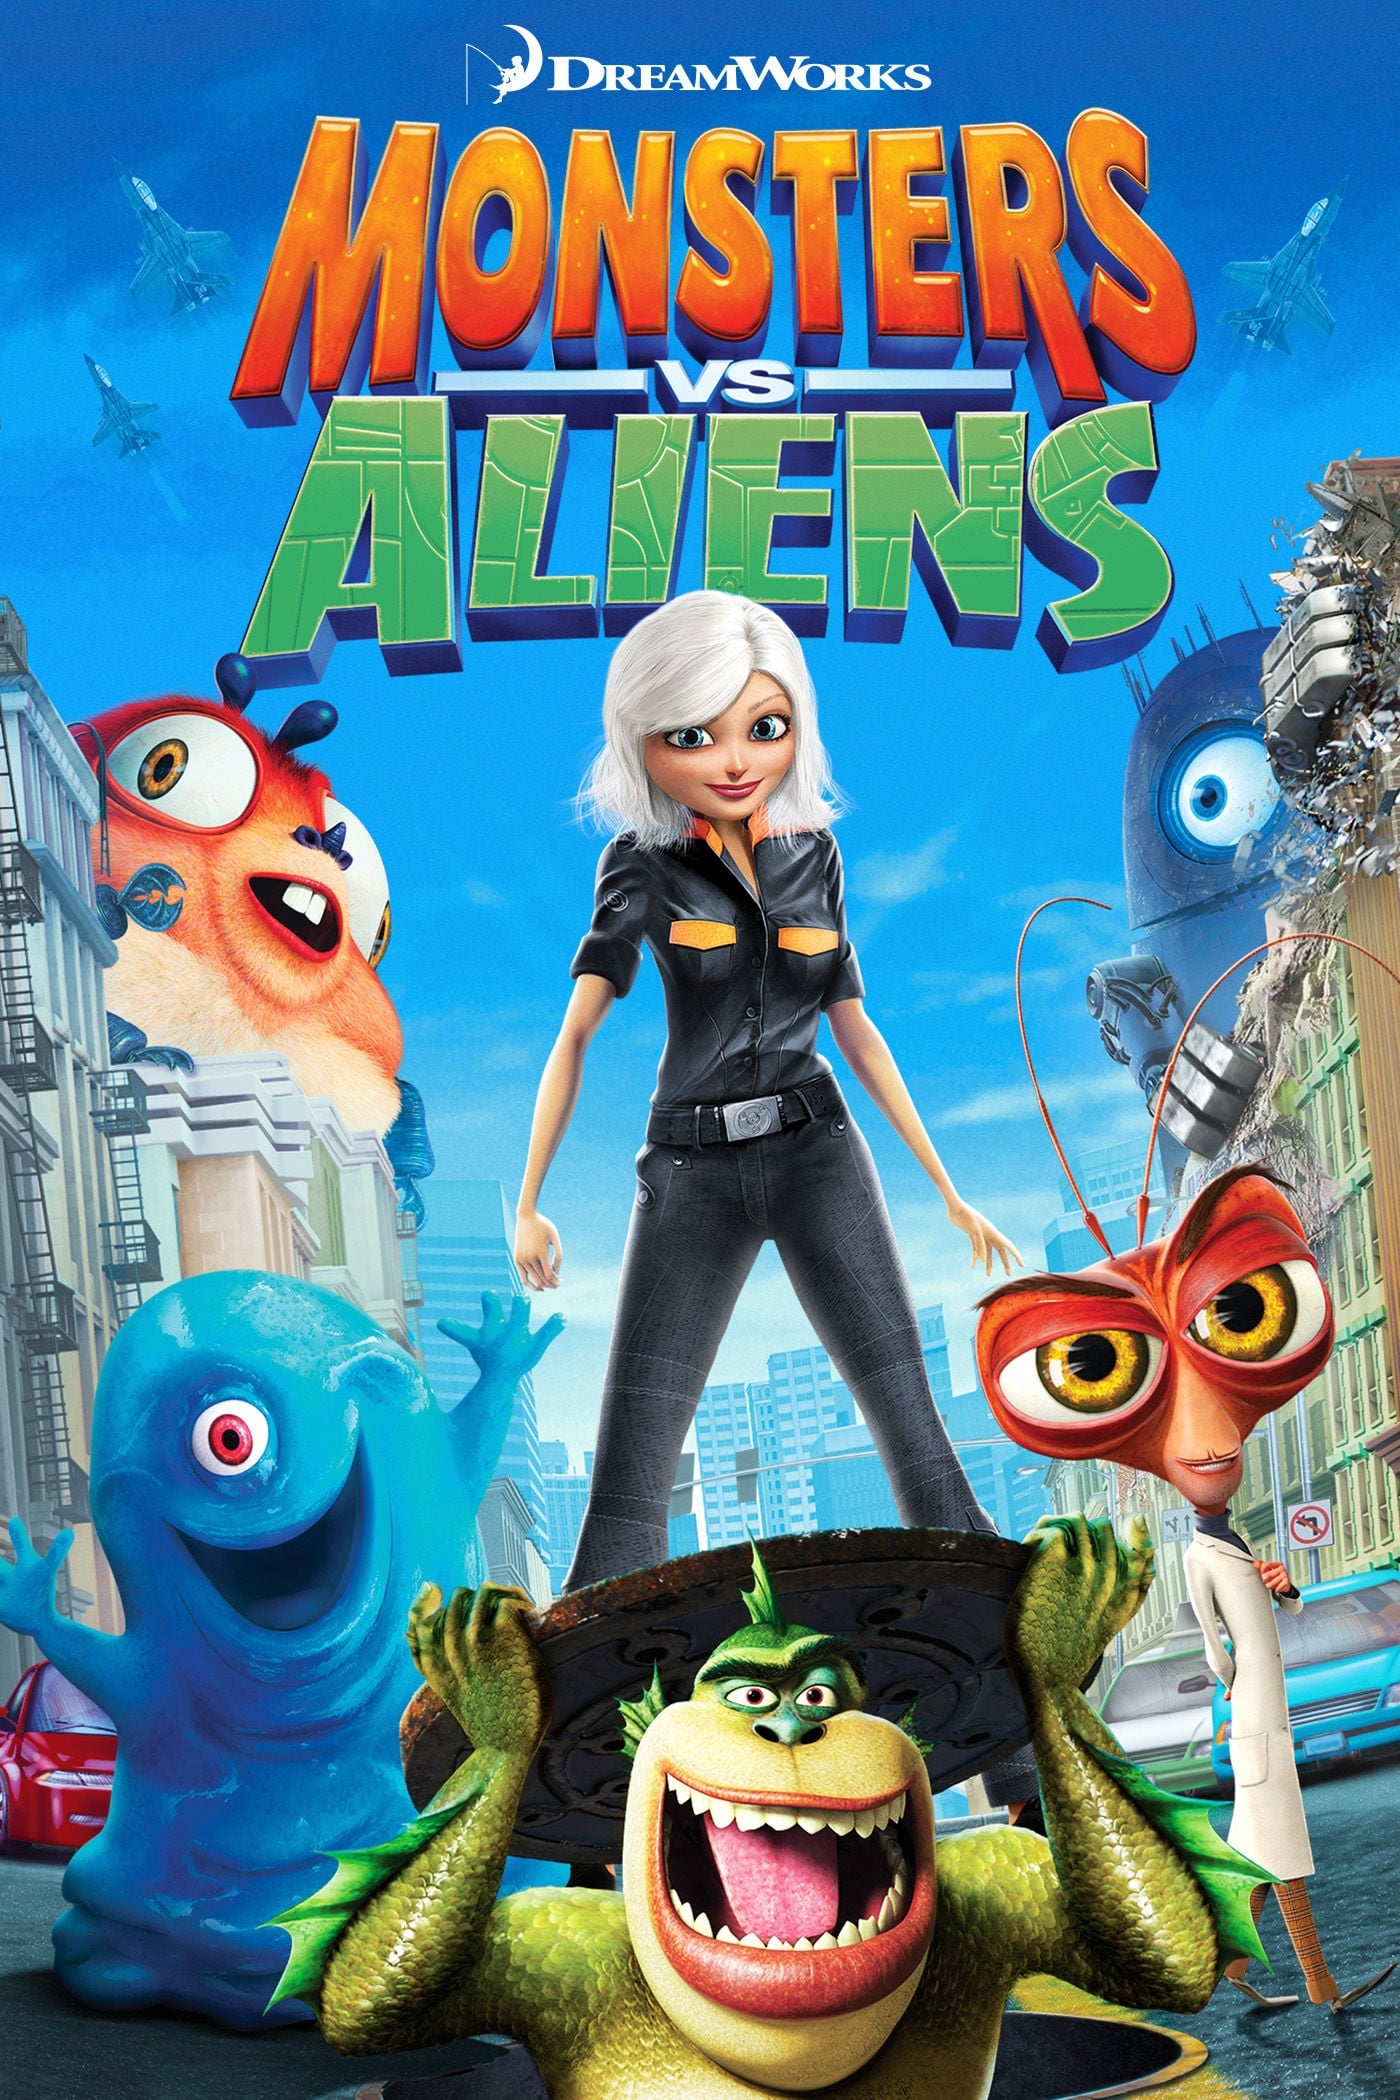 Monsters vs Aliens (2009) | Watchrs Club